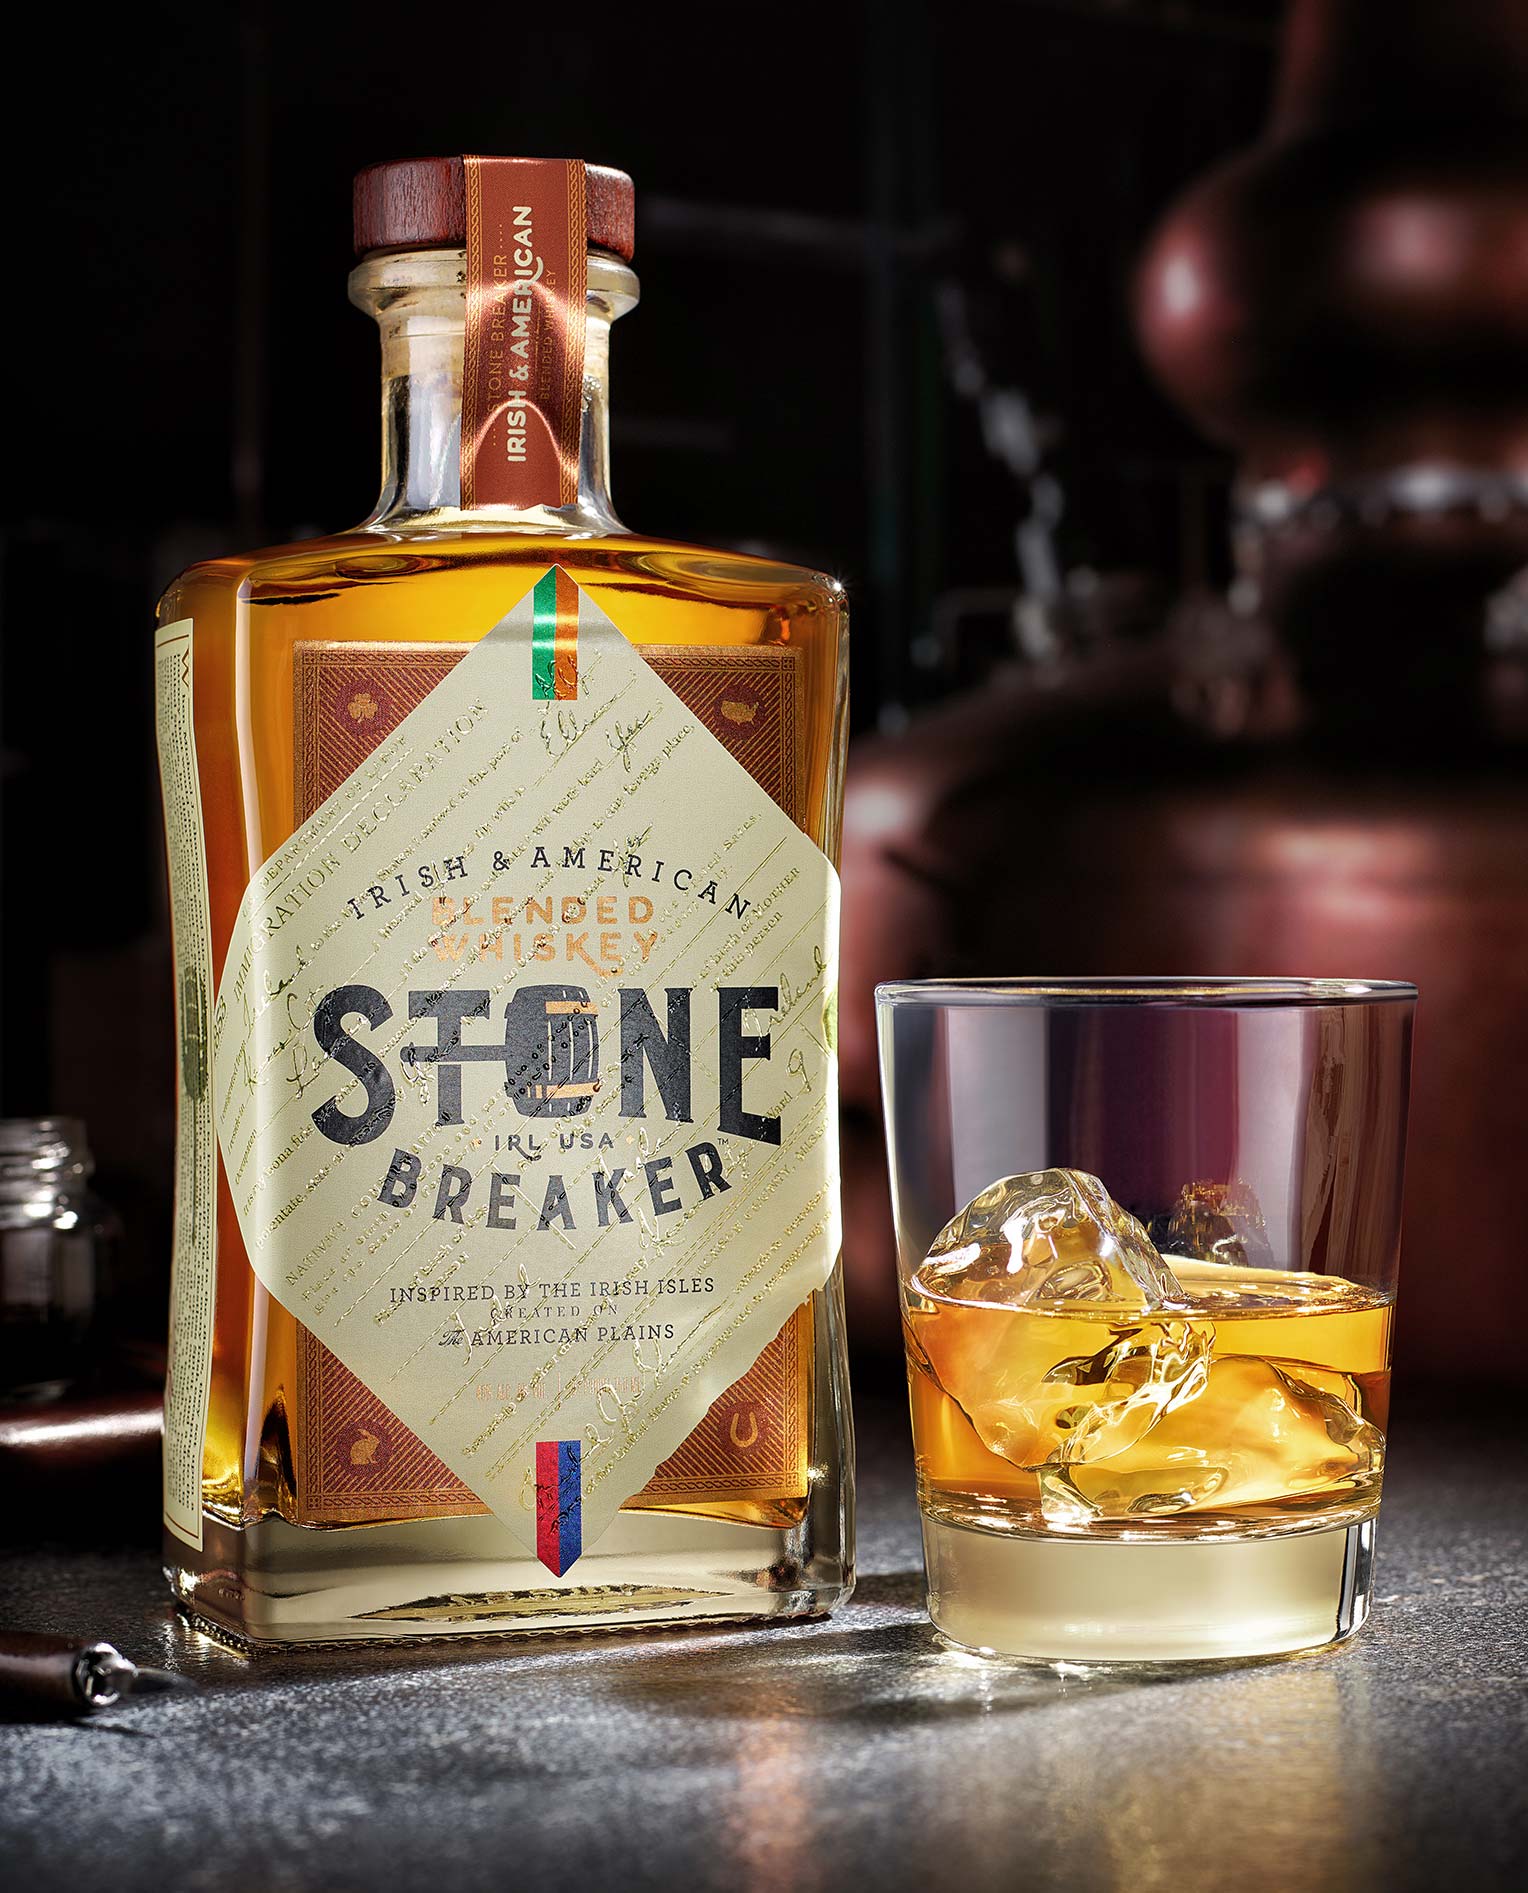 Irish & American Blended Whiskey, Stone Breaker